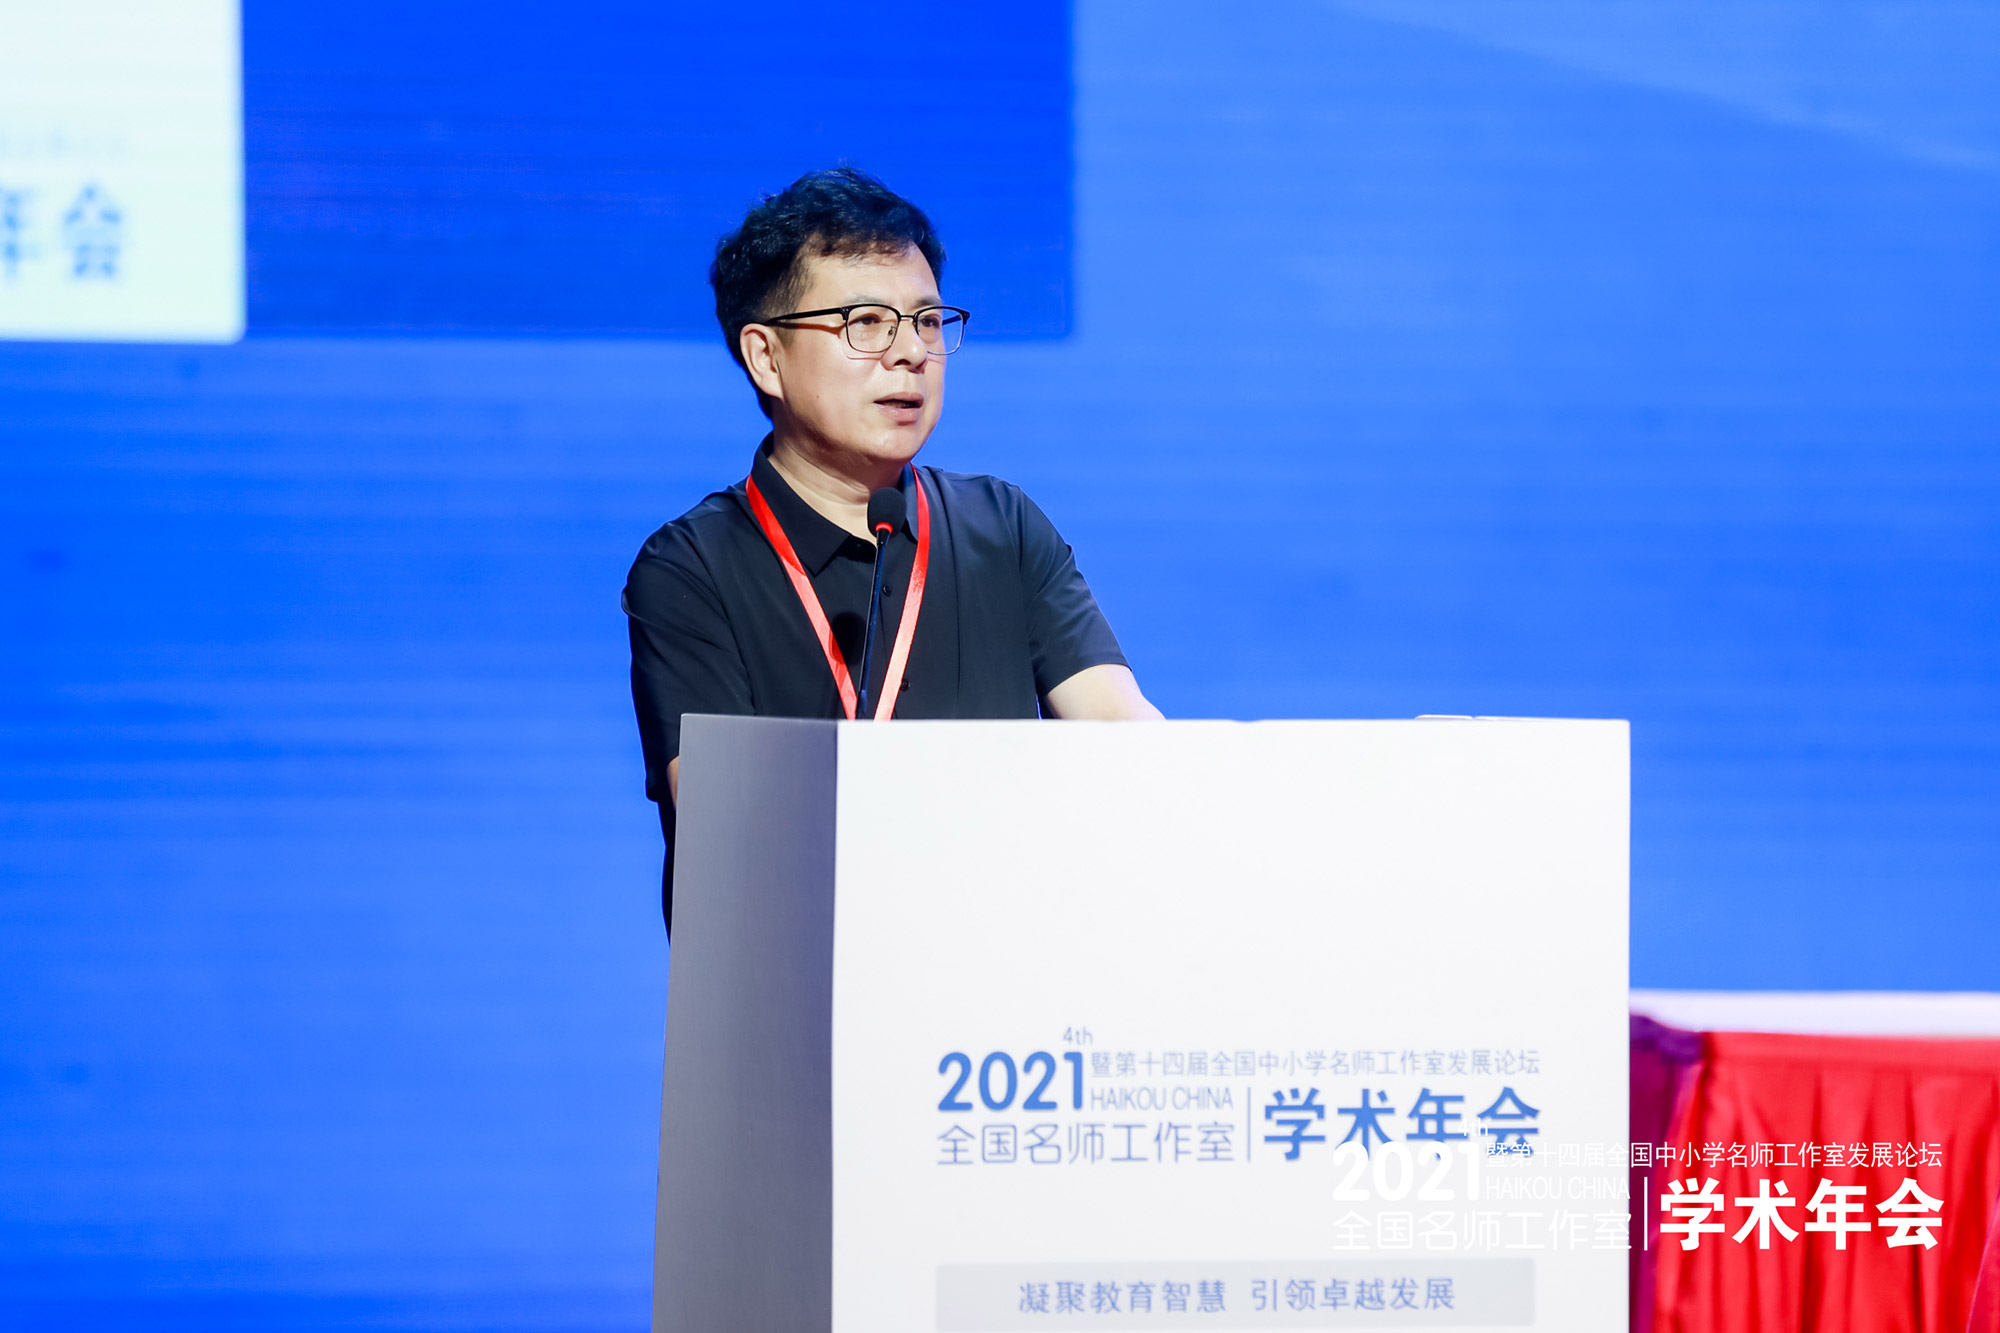 北京中教市培教育研究院院长朱孝忠做了《研究院工作报告》，总结了研究院工作，并对研究院未来发展进行了展望。